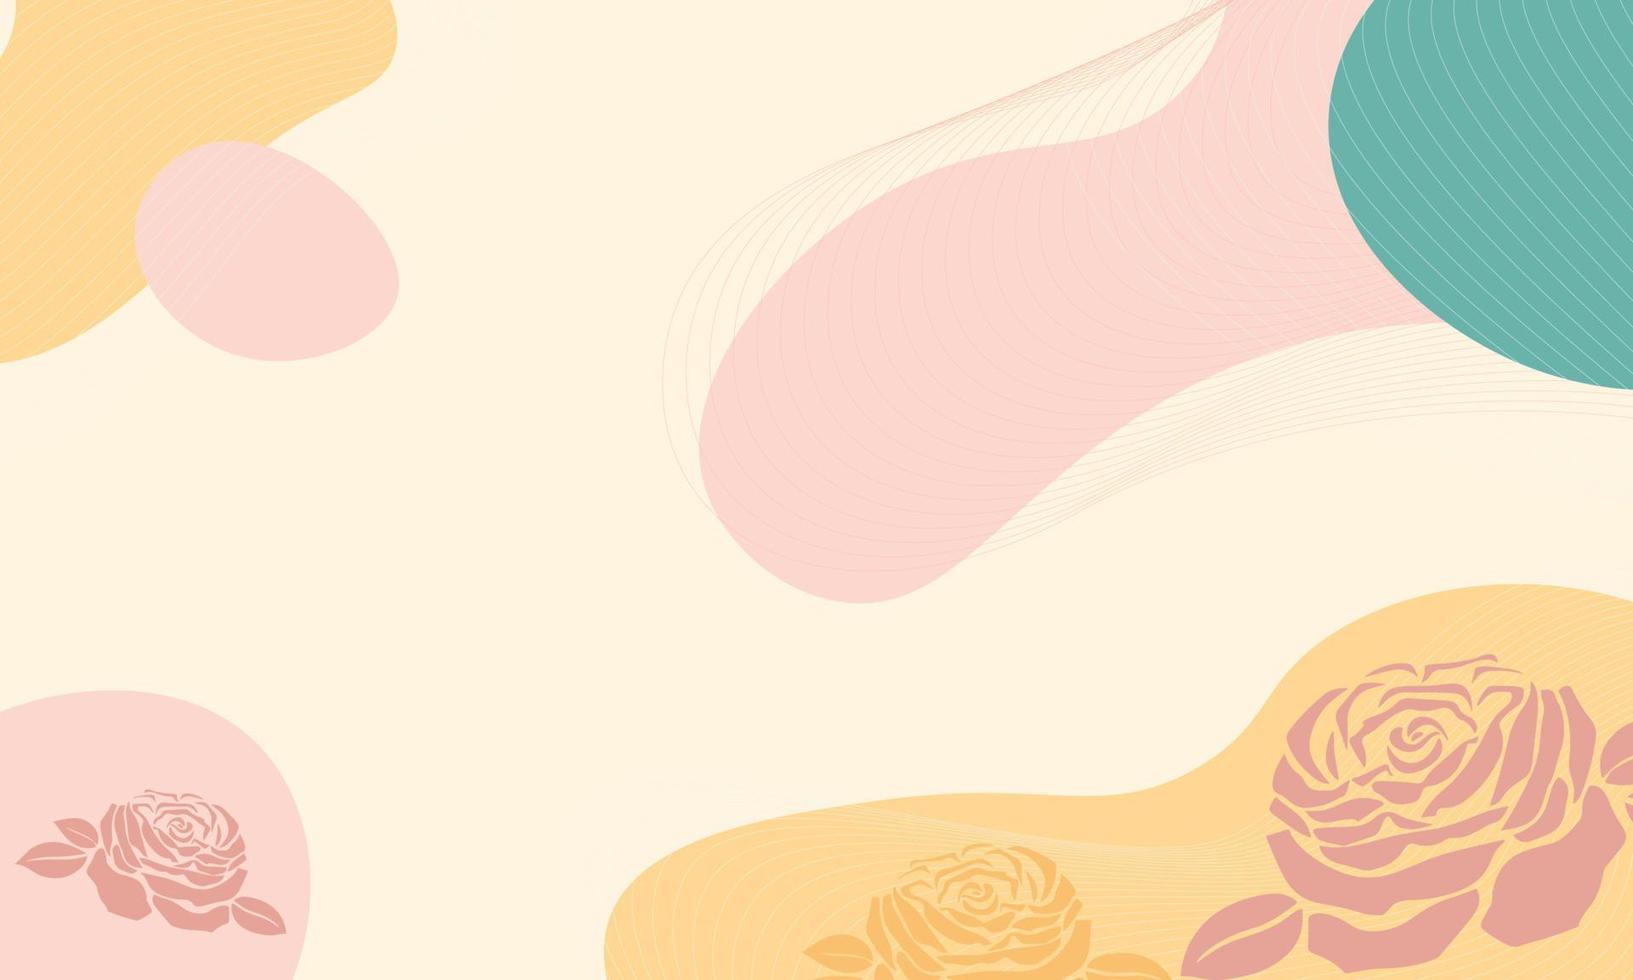 Vektor Hand gezeichnet Rose und Blumen- Hintergrund